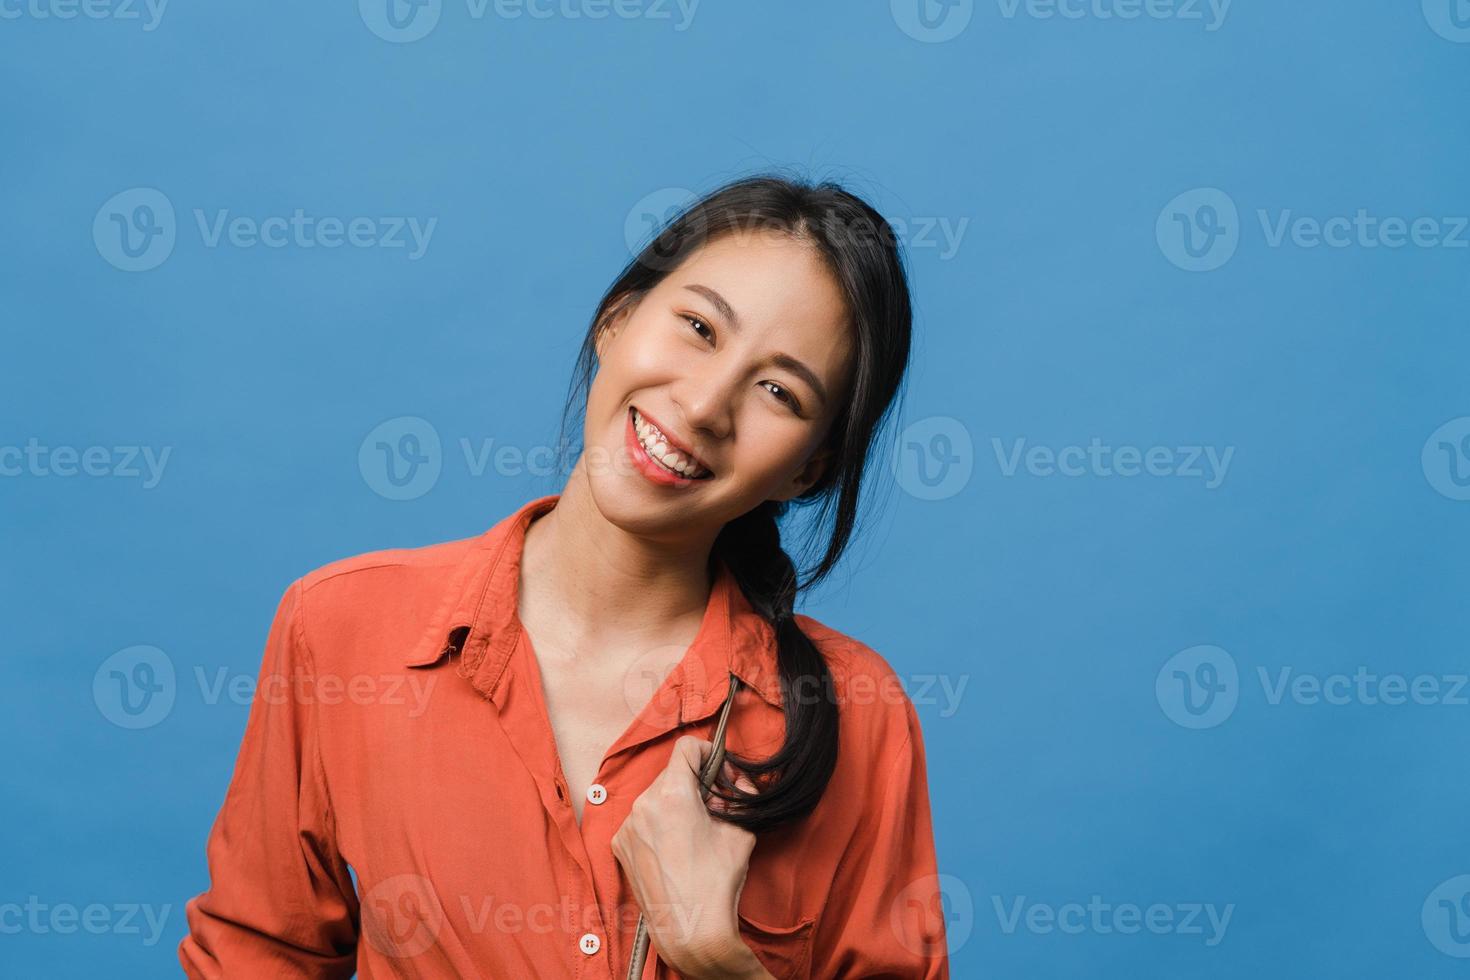 jeune femme asiatique à l'expression positive, sourire largement, vêtue de vêtements décontractés et regardant la caméra sur fond bleu. heureuse adorable femme heureuse se réjouit du succès. concept d'expression faciale. photo